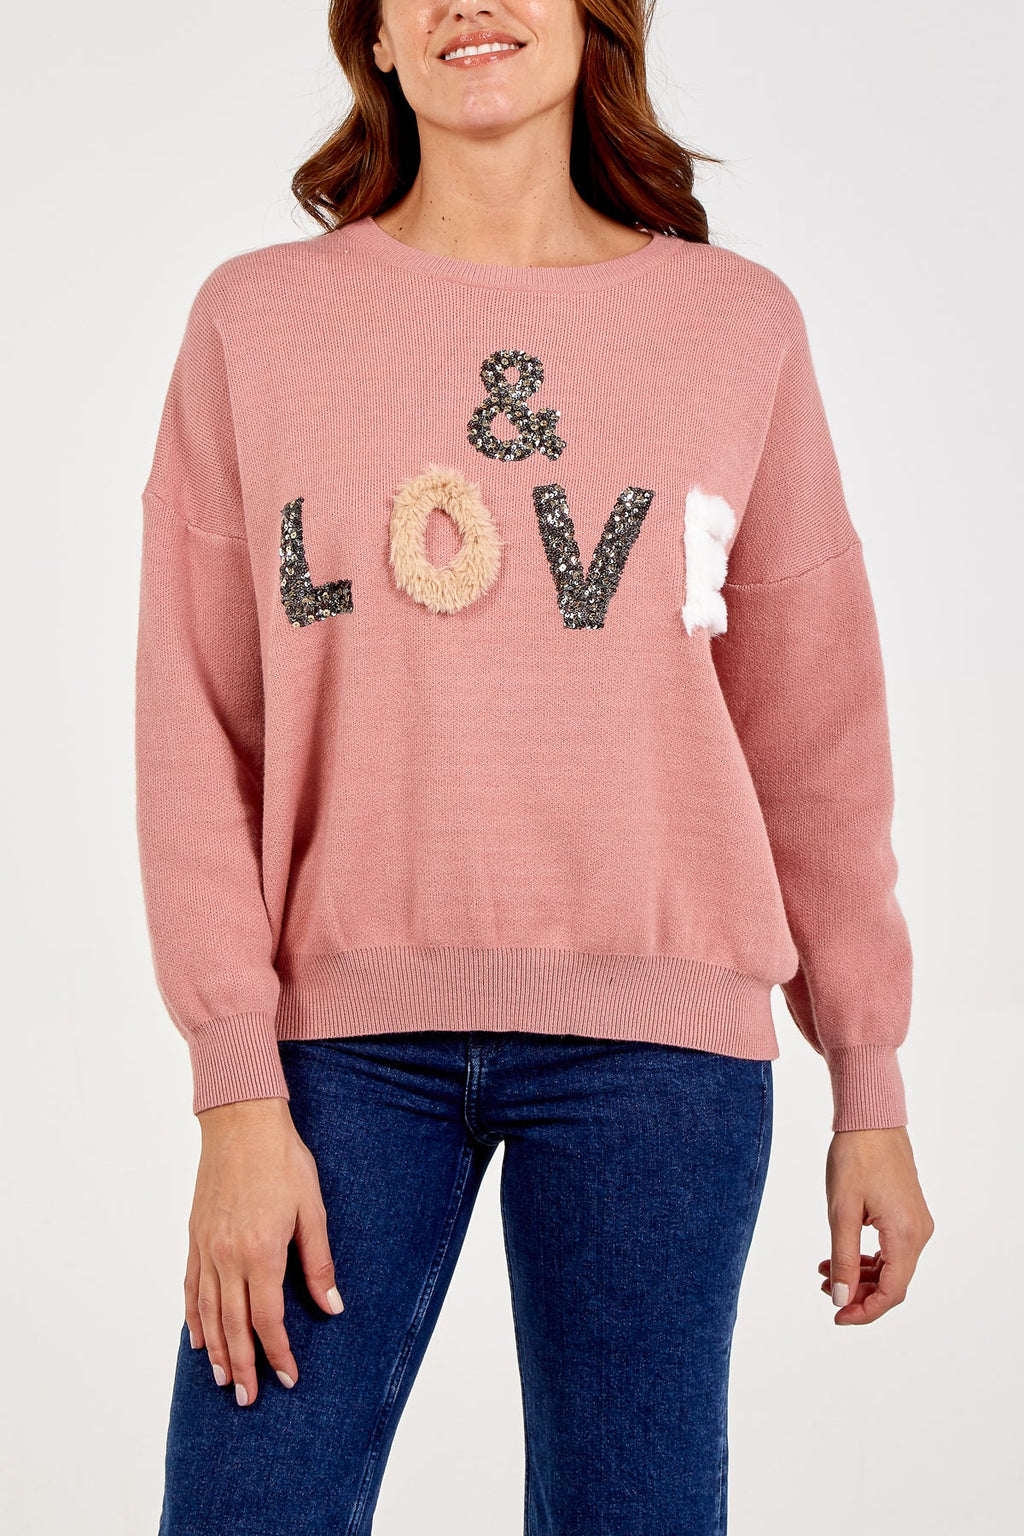 Embellished pink love jumper